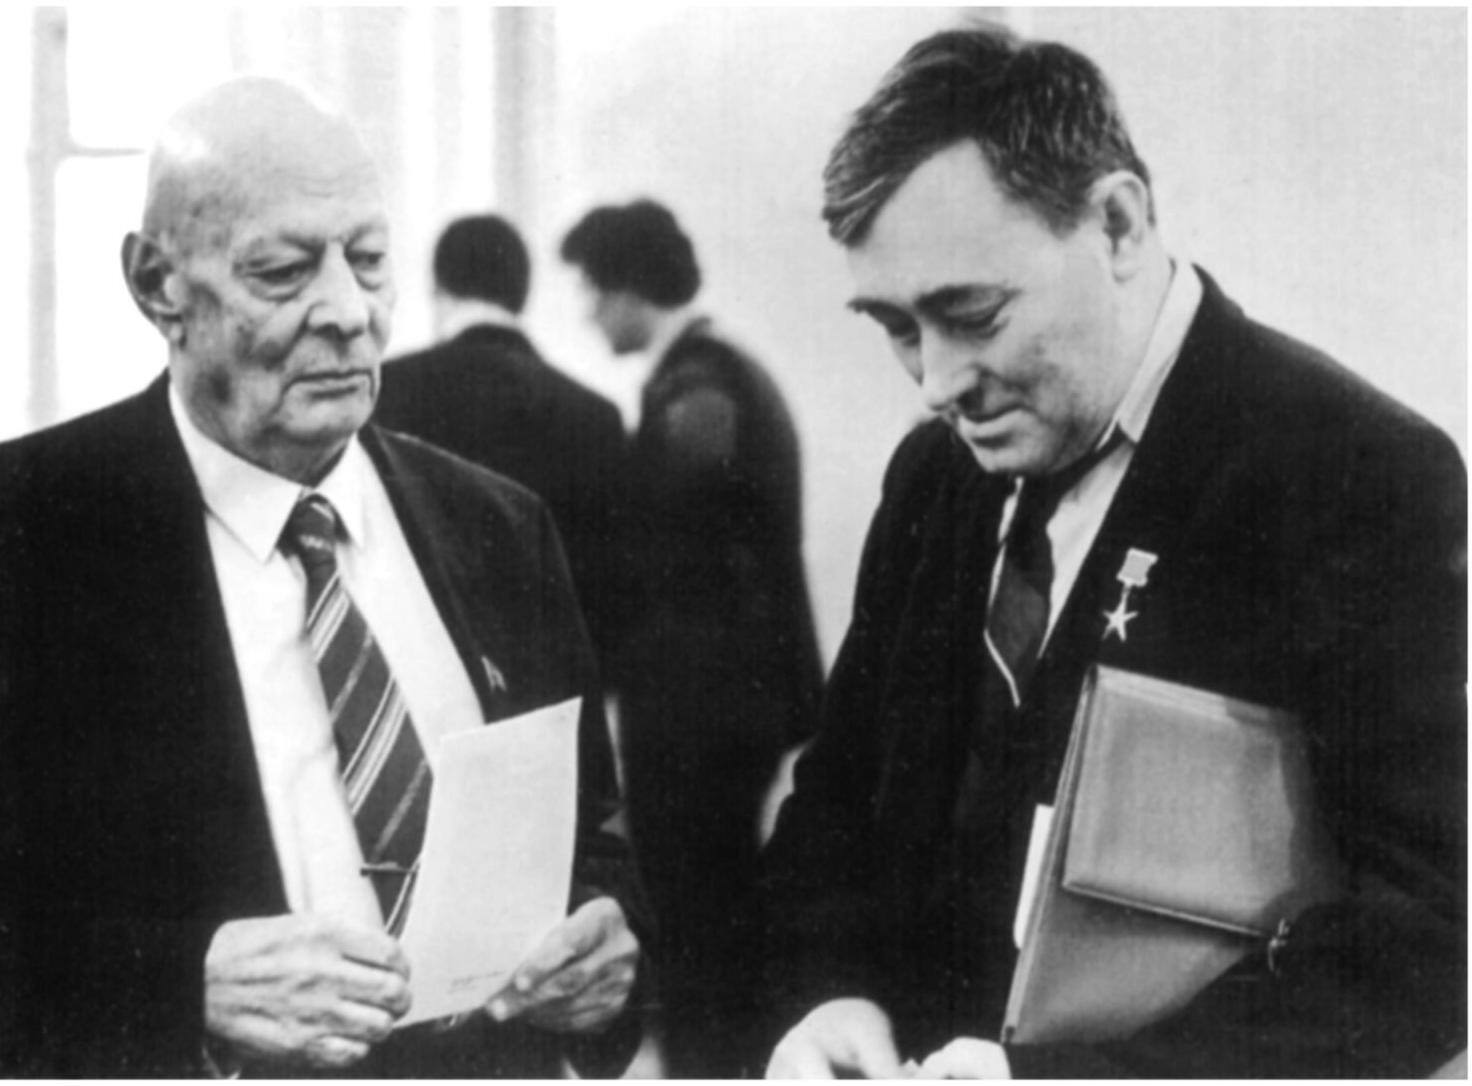 Г.А. Гладков, А.П. Александров. 1985 г.